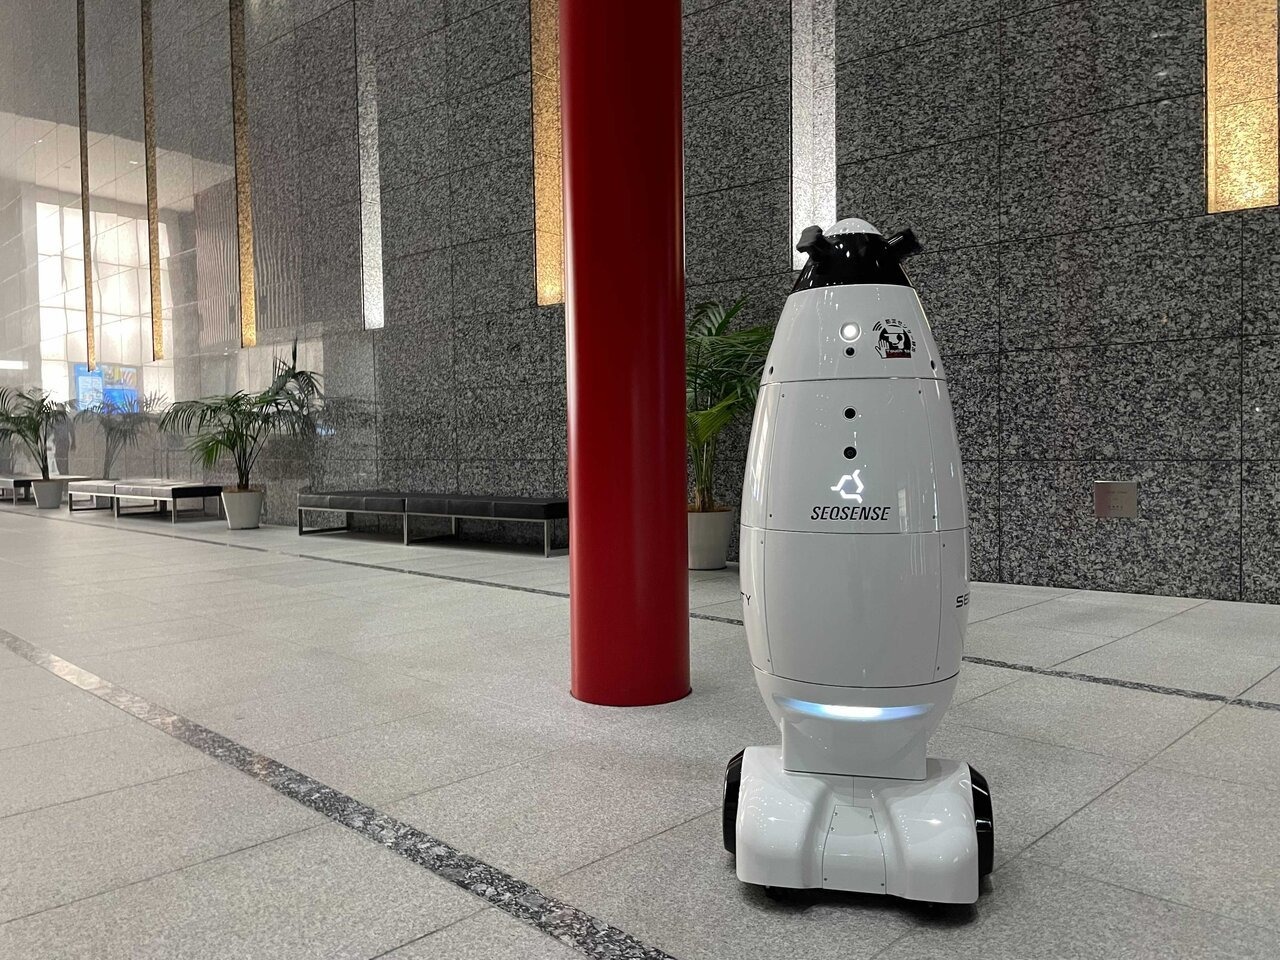 オリナスタワー・新宿センタービルで自律移動型警備ロボット「SQ-2」の実証実験が実施